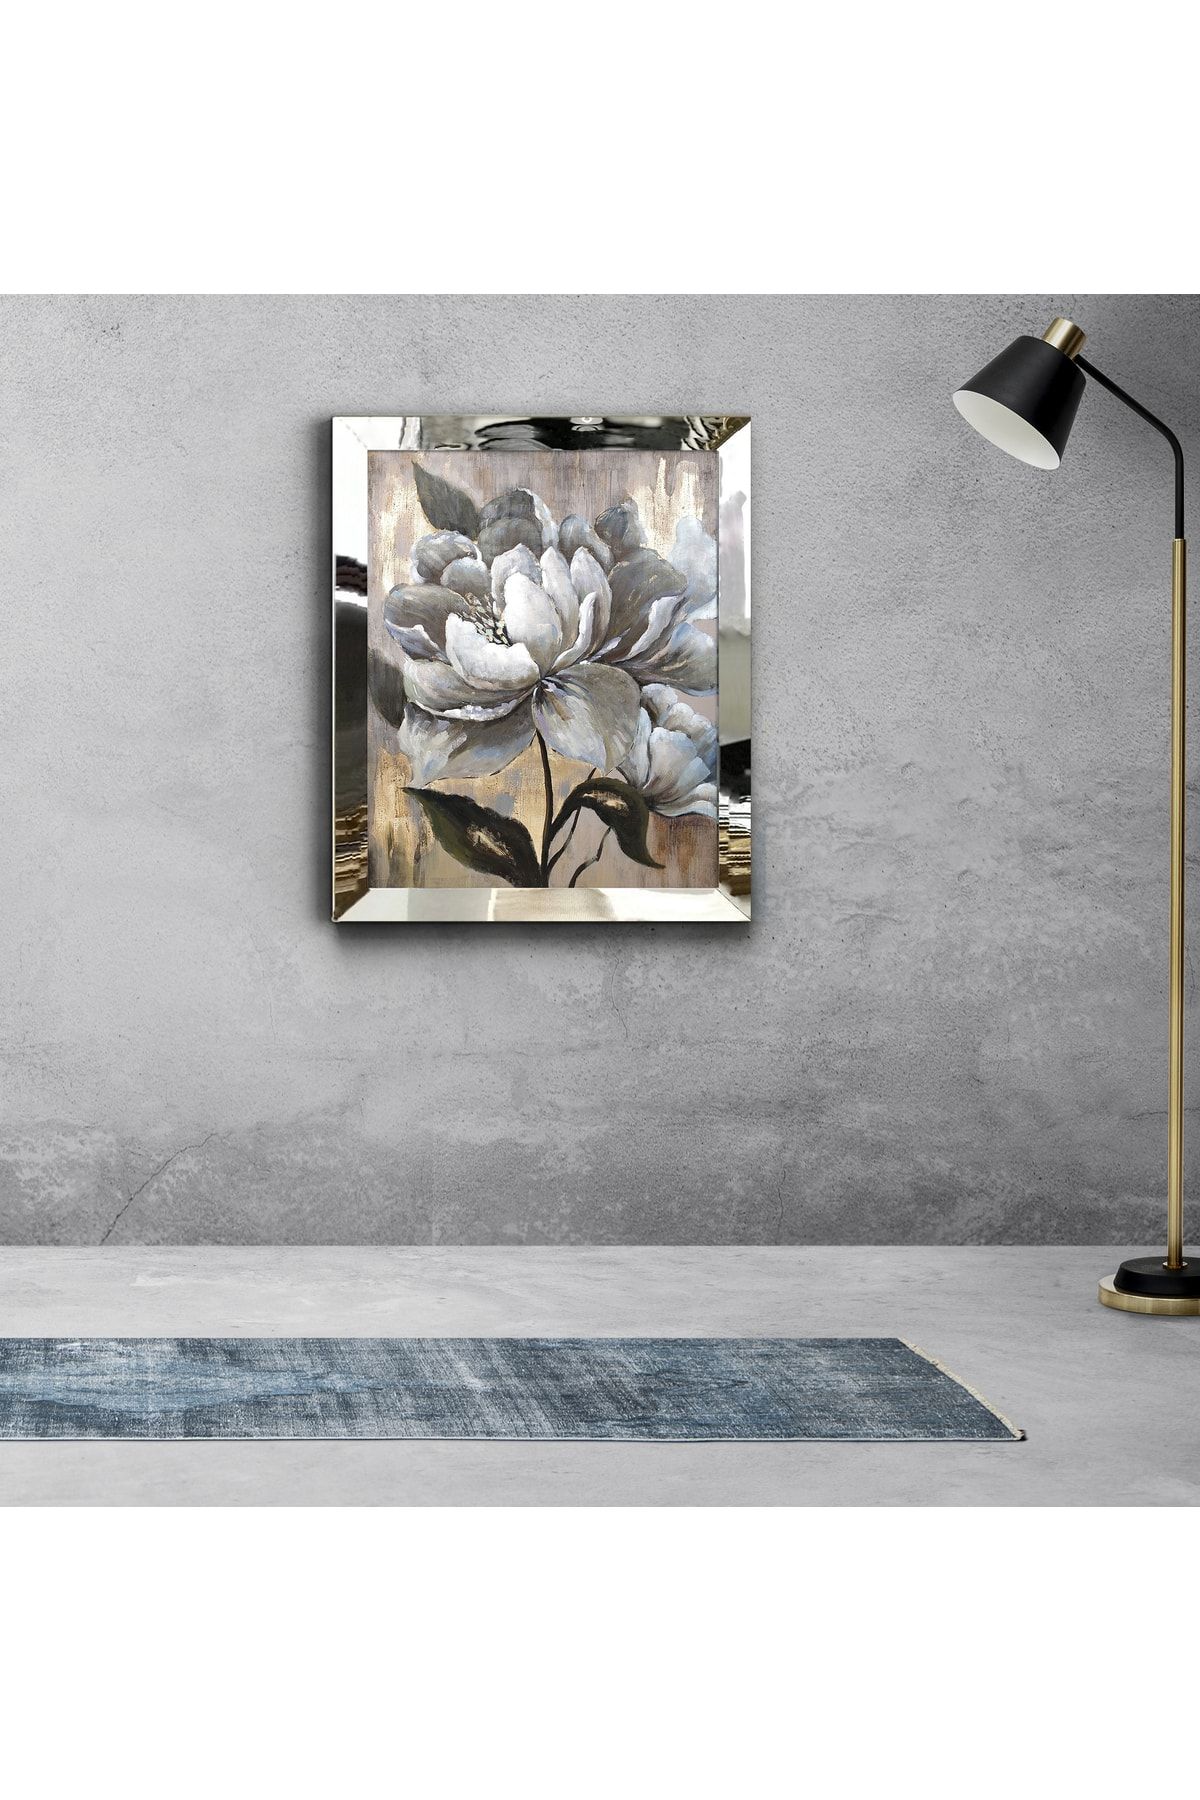 tablom burada Gümüş Ayna Çerçeveli Beyaz Yağlı Boya Efektli Manolya Çiçeği Tablosu